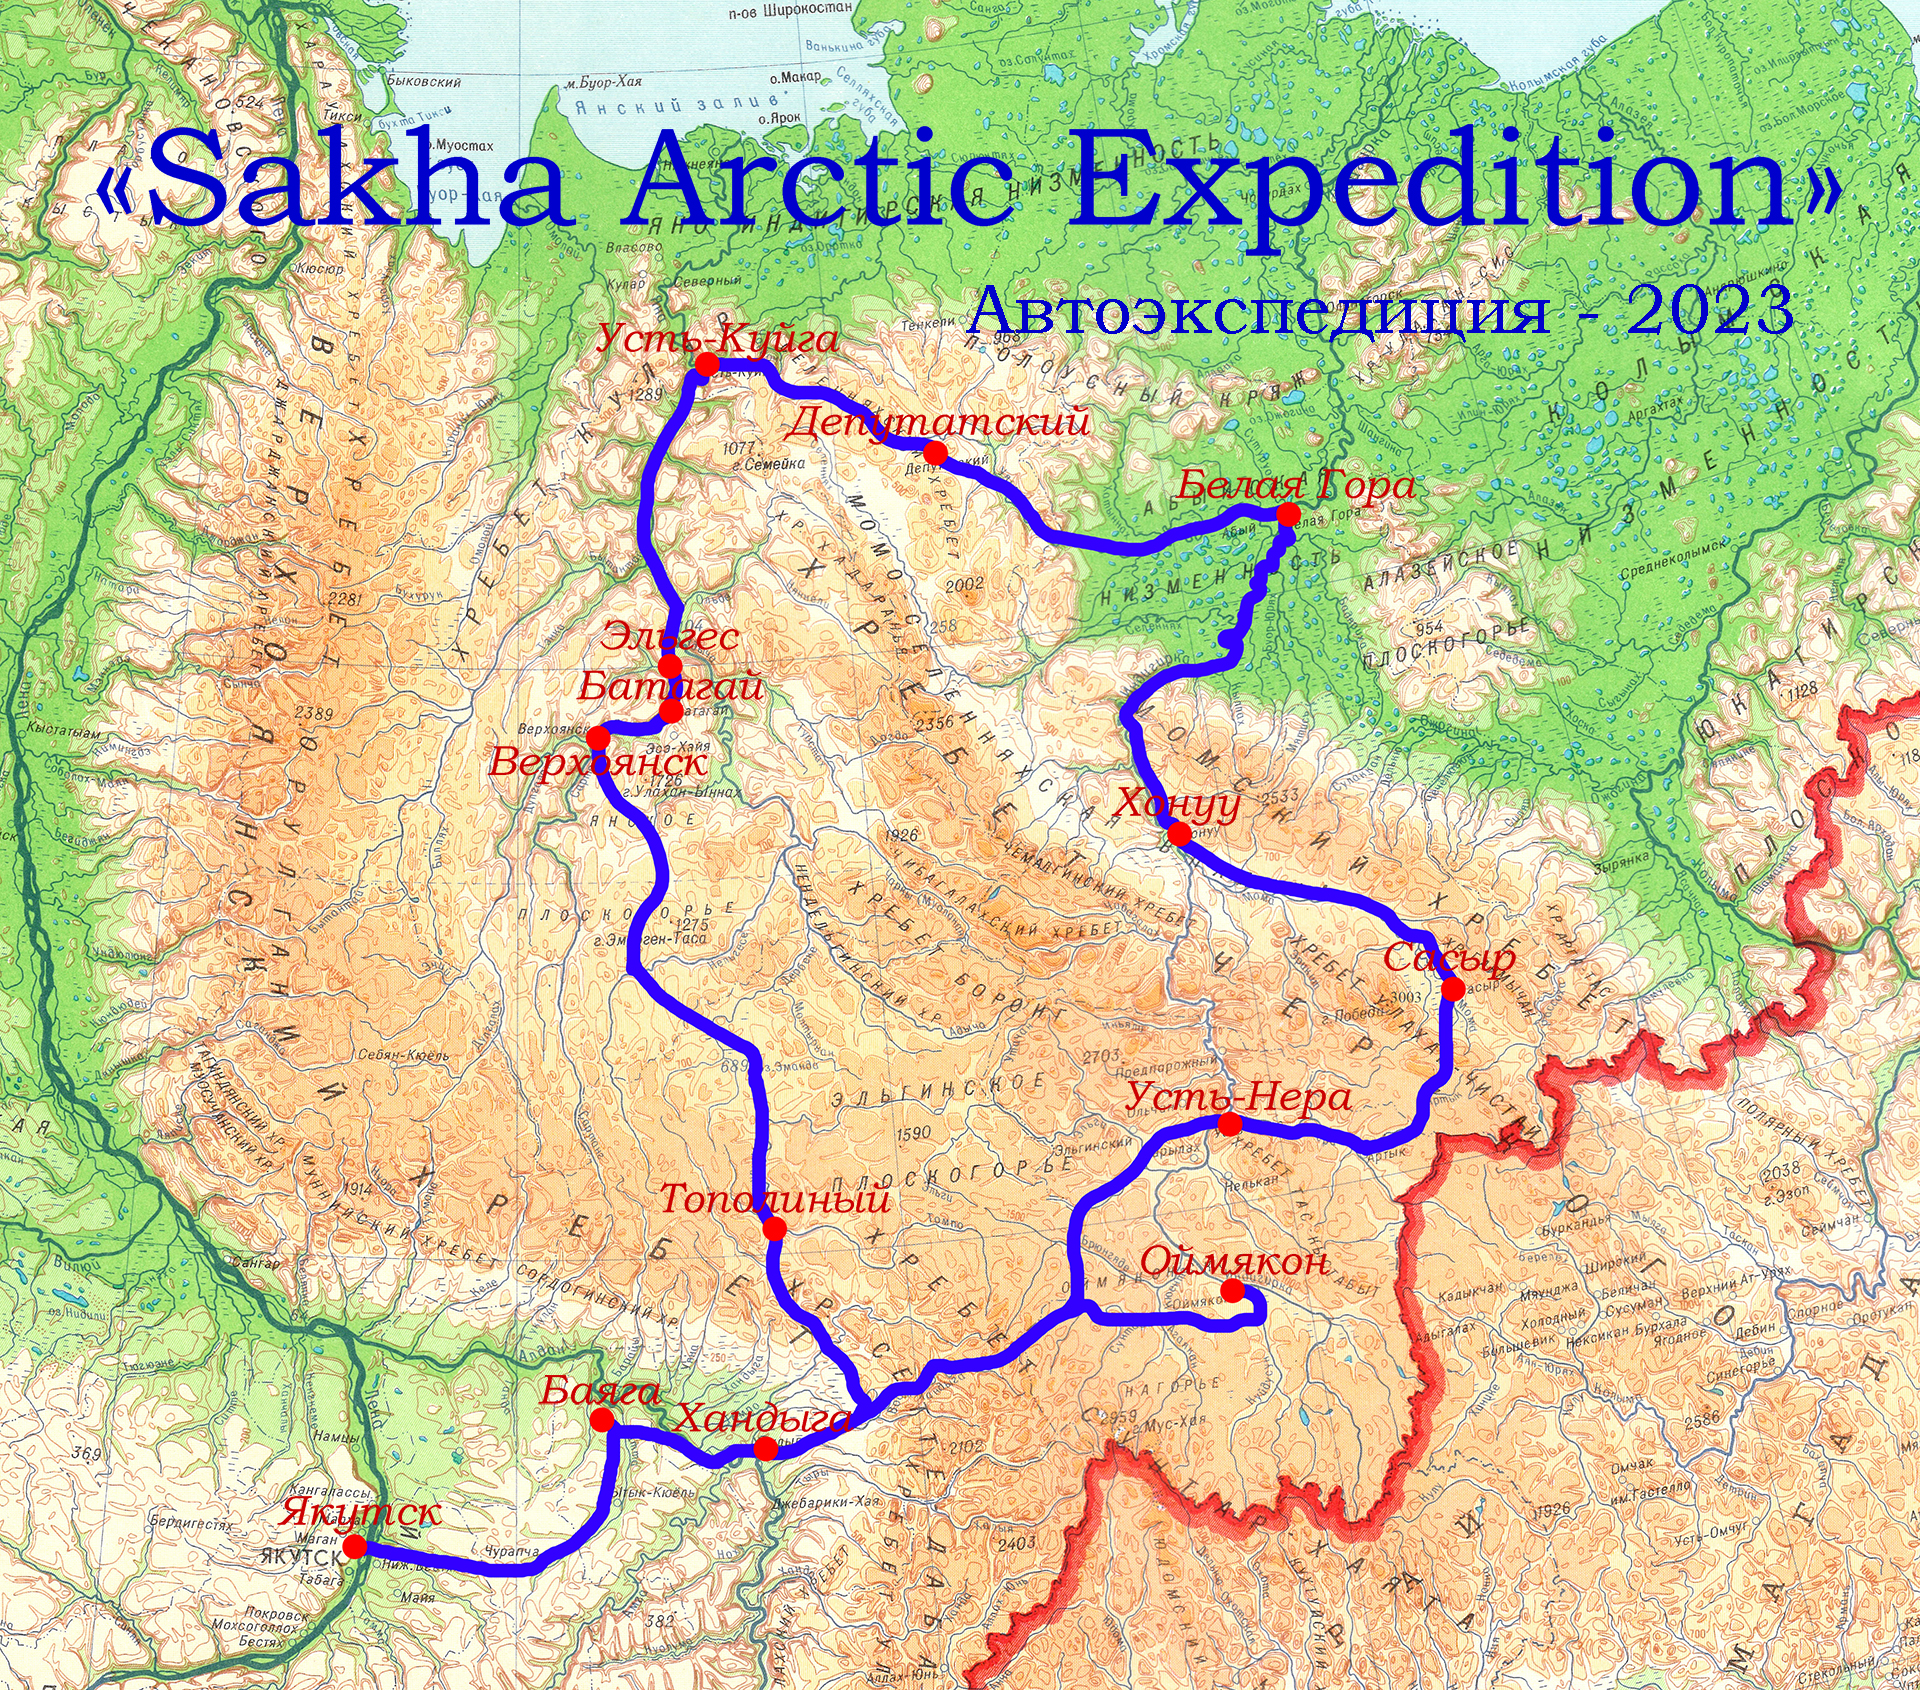 Автоэкспедиция Sakha Arctic Expedition/ Cтарт. Якутск-Баяга-Хандыга